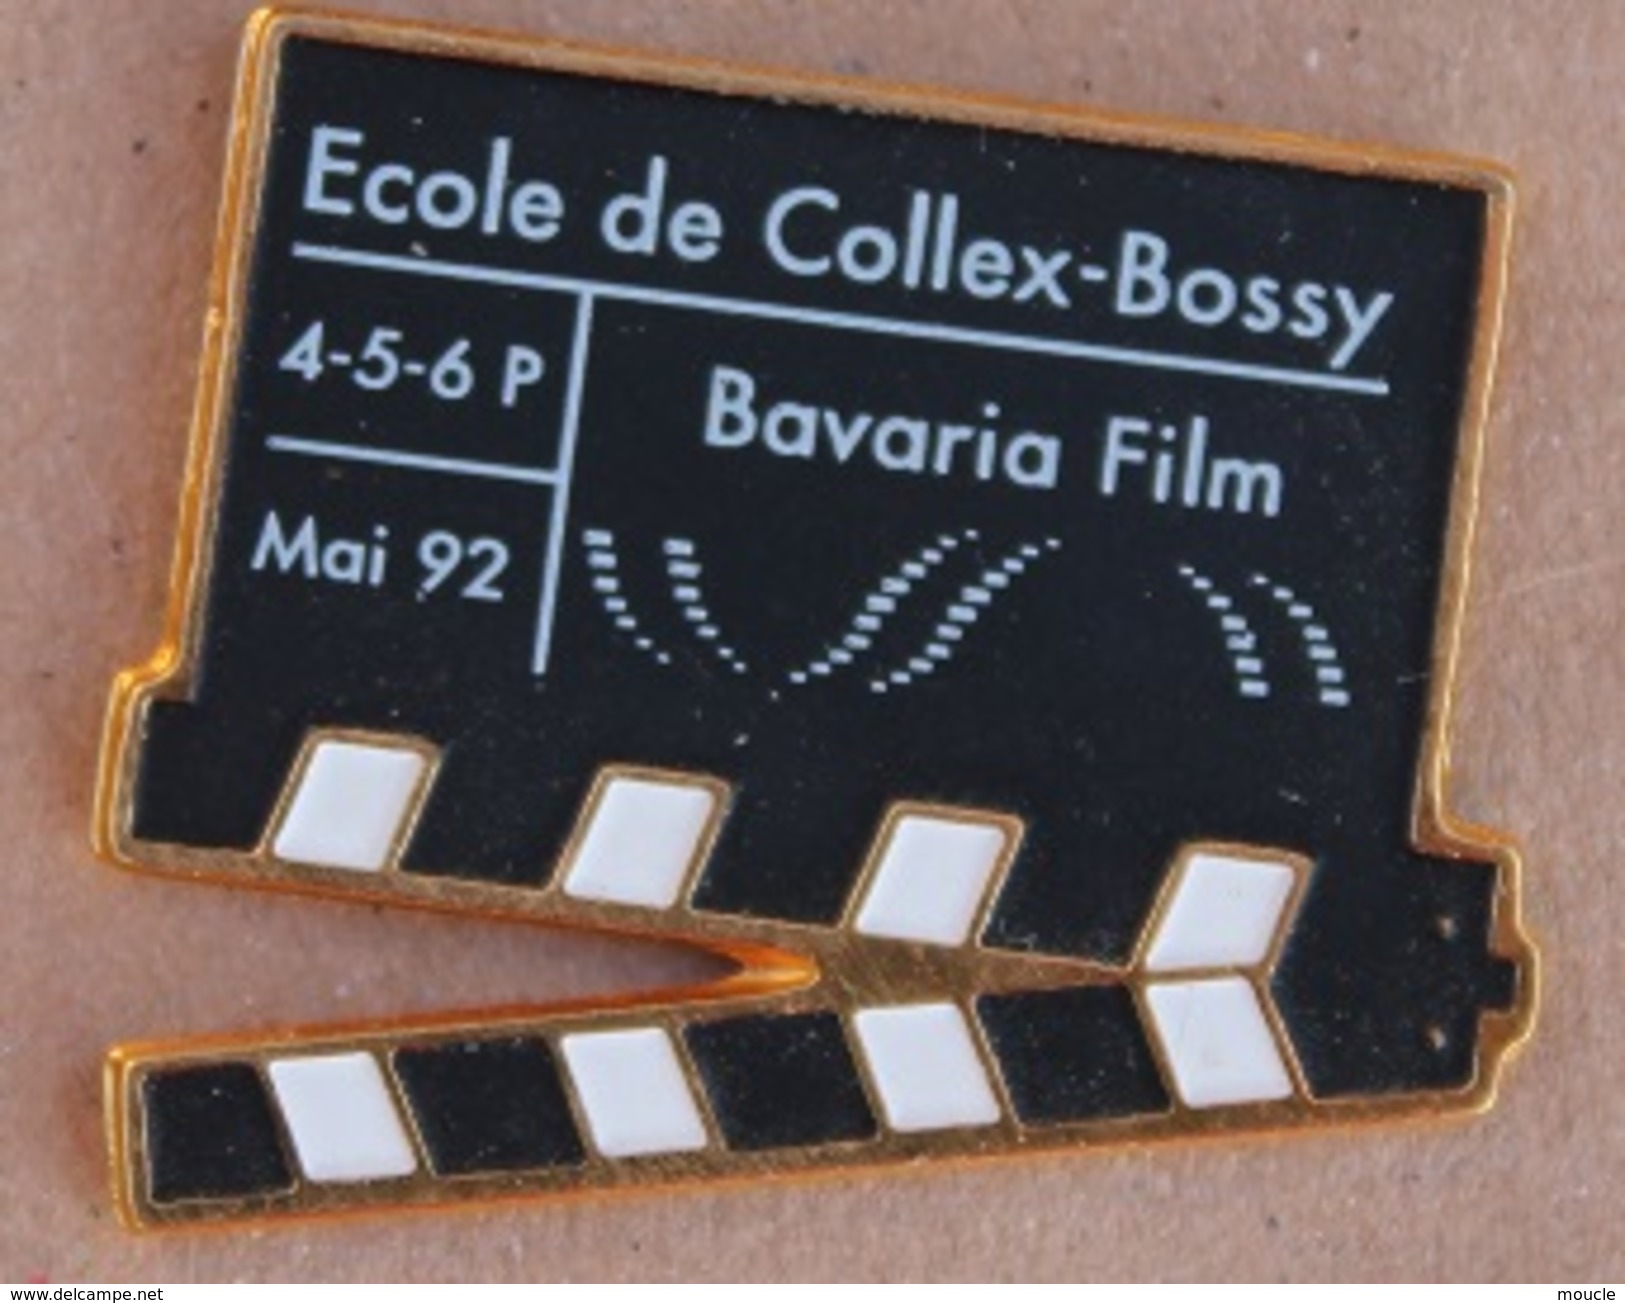 CLAP DE REALISATEUR - CINEMA - FILM - ECOLE DE COLLEY-BOSSY - GENEVE - SUISSE - BAVARIA FILM - MAI 92   -  (17) - Kino